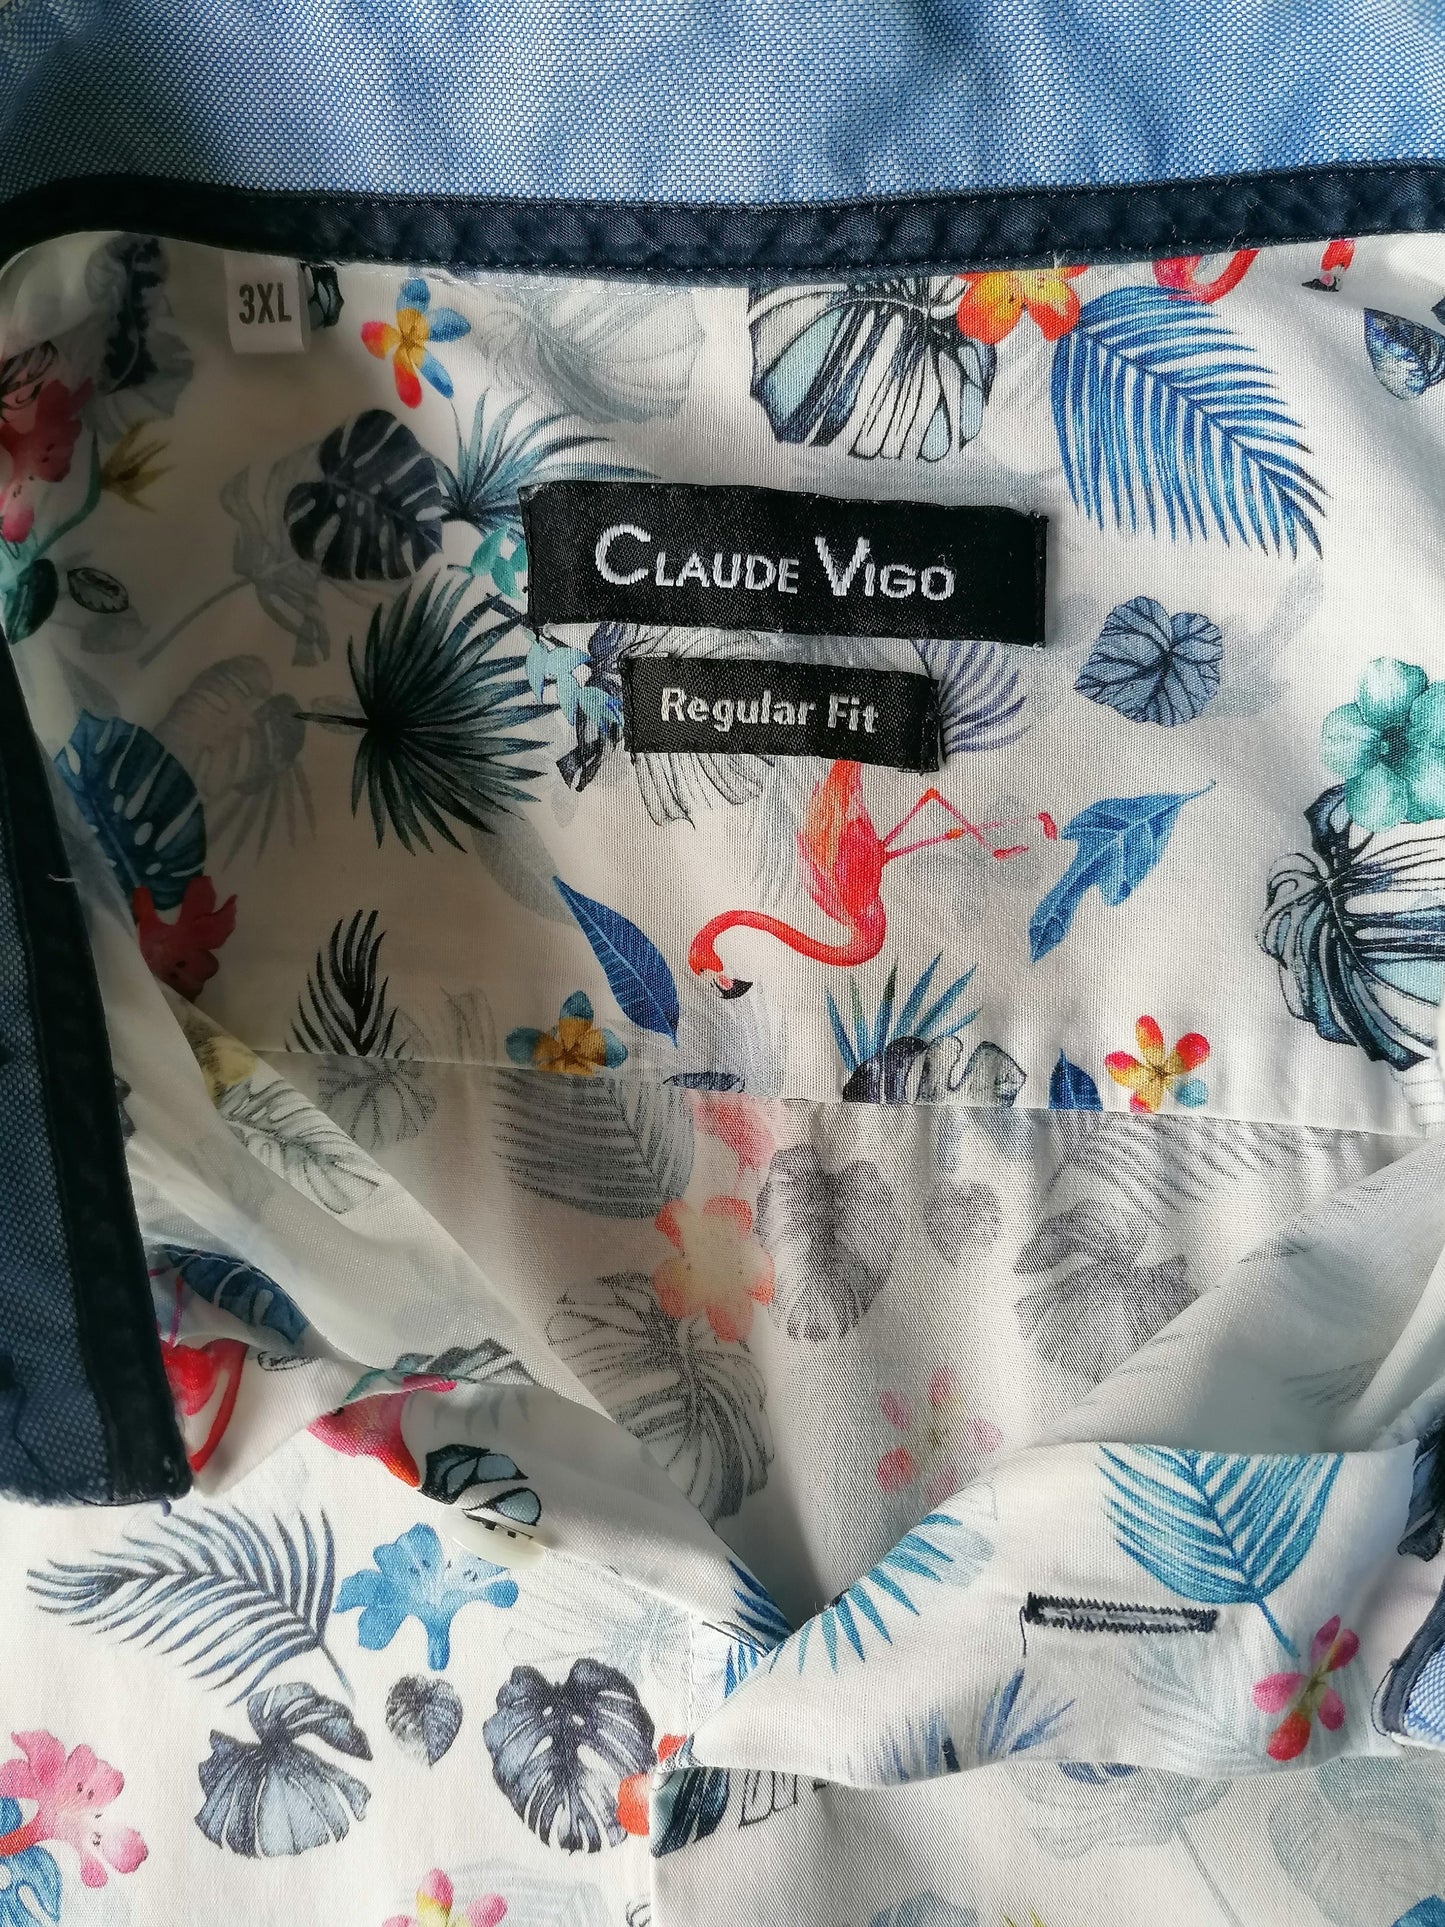 Claude Vigo Shirt Sleeve. Impression de flamants fleuries rose bleu. Taille xxxl / 3xl. Ajustement régulier.